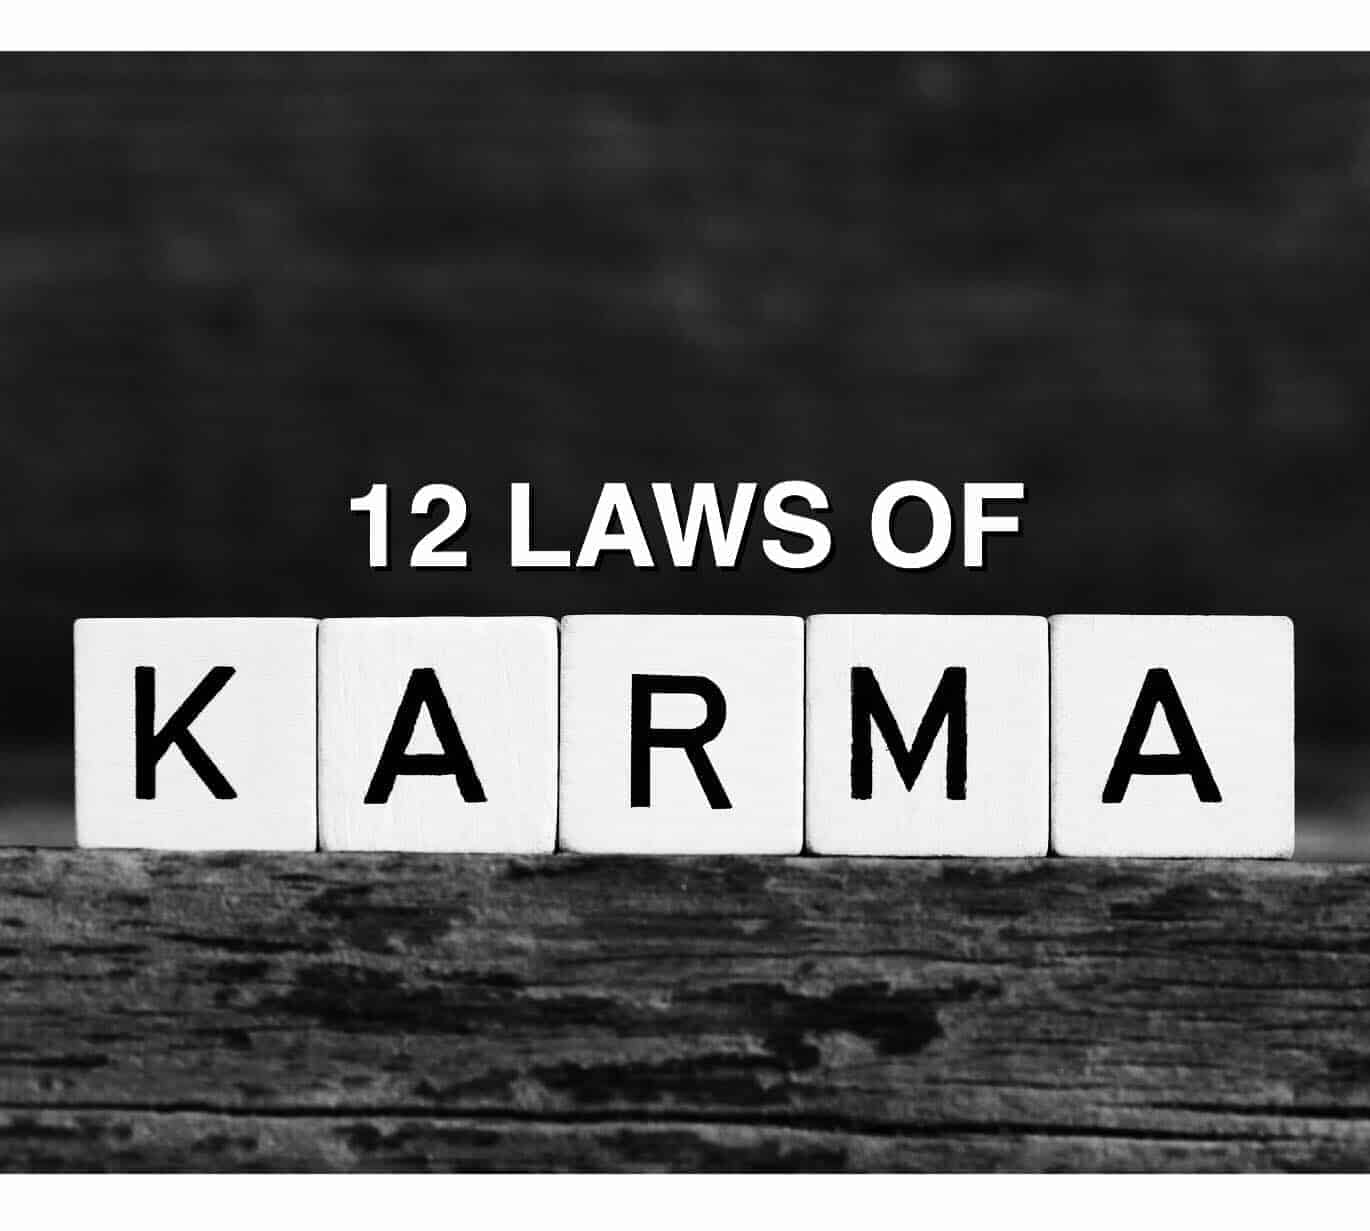 Do Downvotes affect karma